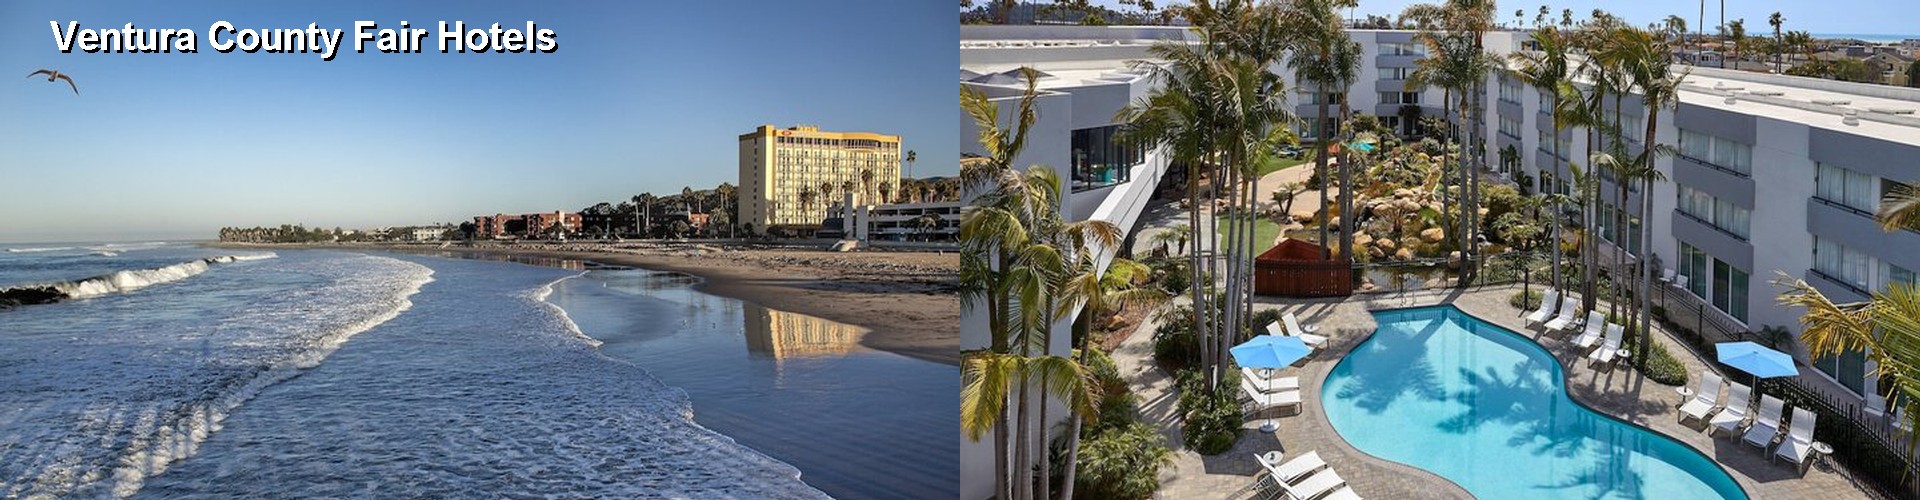 5 Best Hotels near Ventura County Fair